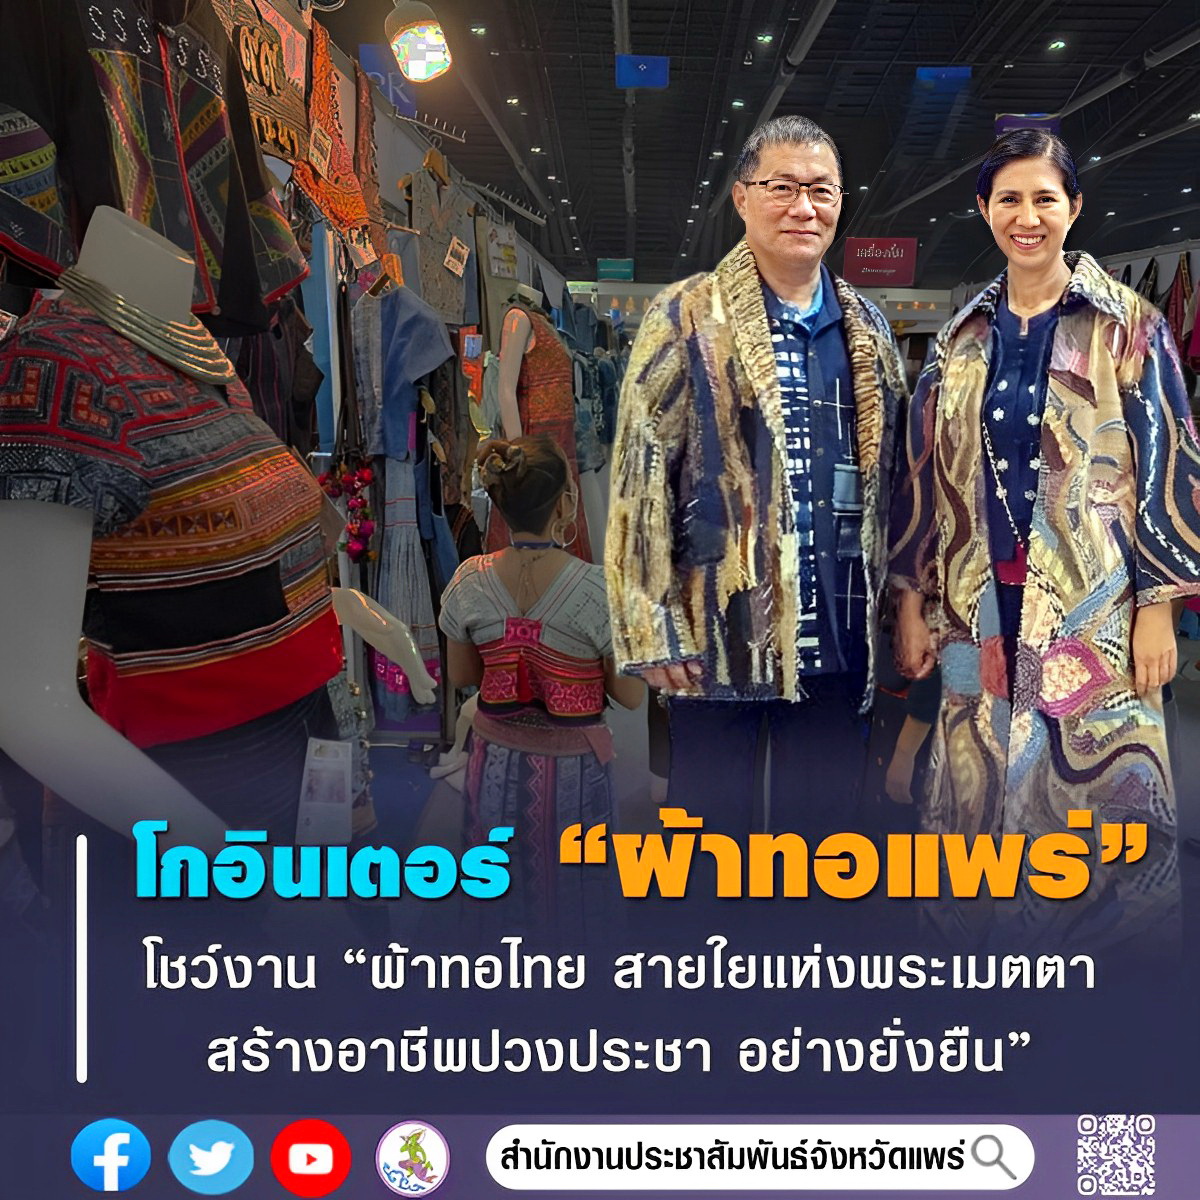 ผู้ว่าฯแพร่ ควงแม่บ้านมหาดไทย เยี่ยมชมและให้กำลังใจผู้ประกอบการ OTOP จังหวัดแพร่ ในงานศิลปาชีพ ประทีปไทย OTOP หลอมดวงใจ ด้วยพระบารมี “ผ้าทอไทย สายใยแห่งพระเมตตา สร้างอาชีพปวงประชา อย่างยั่งยืน”